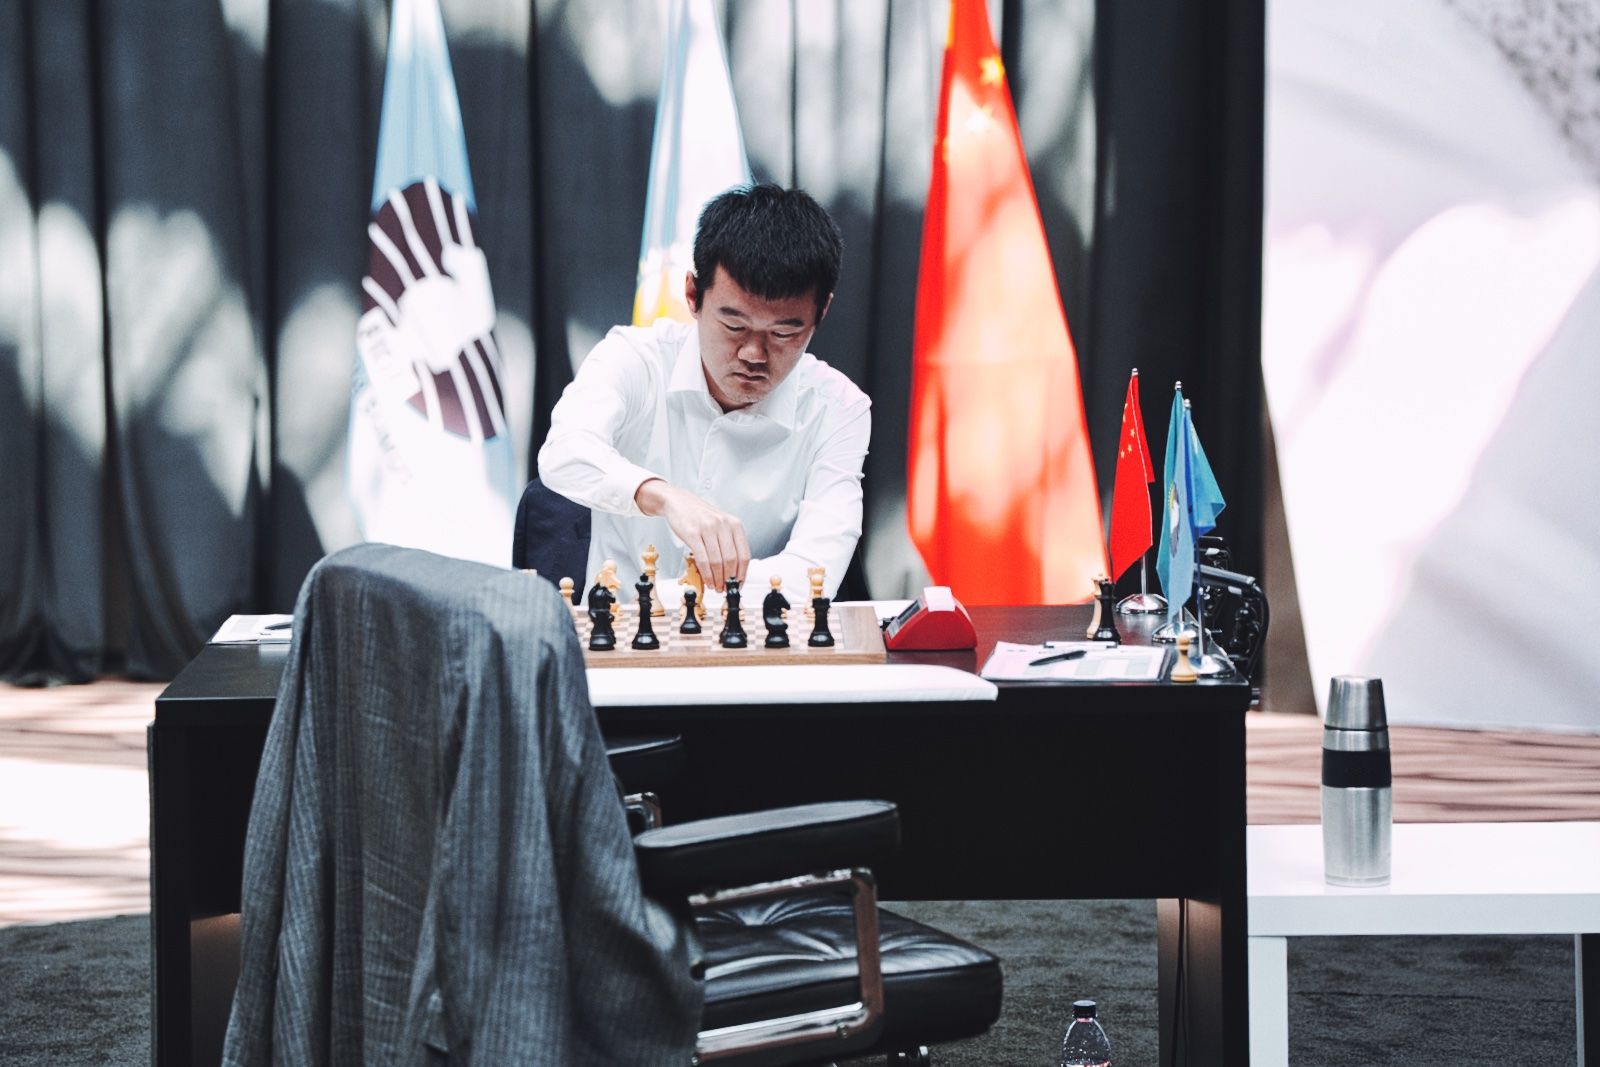 Chess.com Português on X: Astana 🇰🇿 será sede do match 🇨🇳 Ding-Nepo  🇷🇺 do Campeonato Mundial de Xadrez da FIDE 🏆 ⬇️   / X